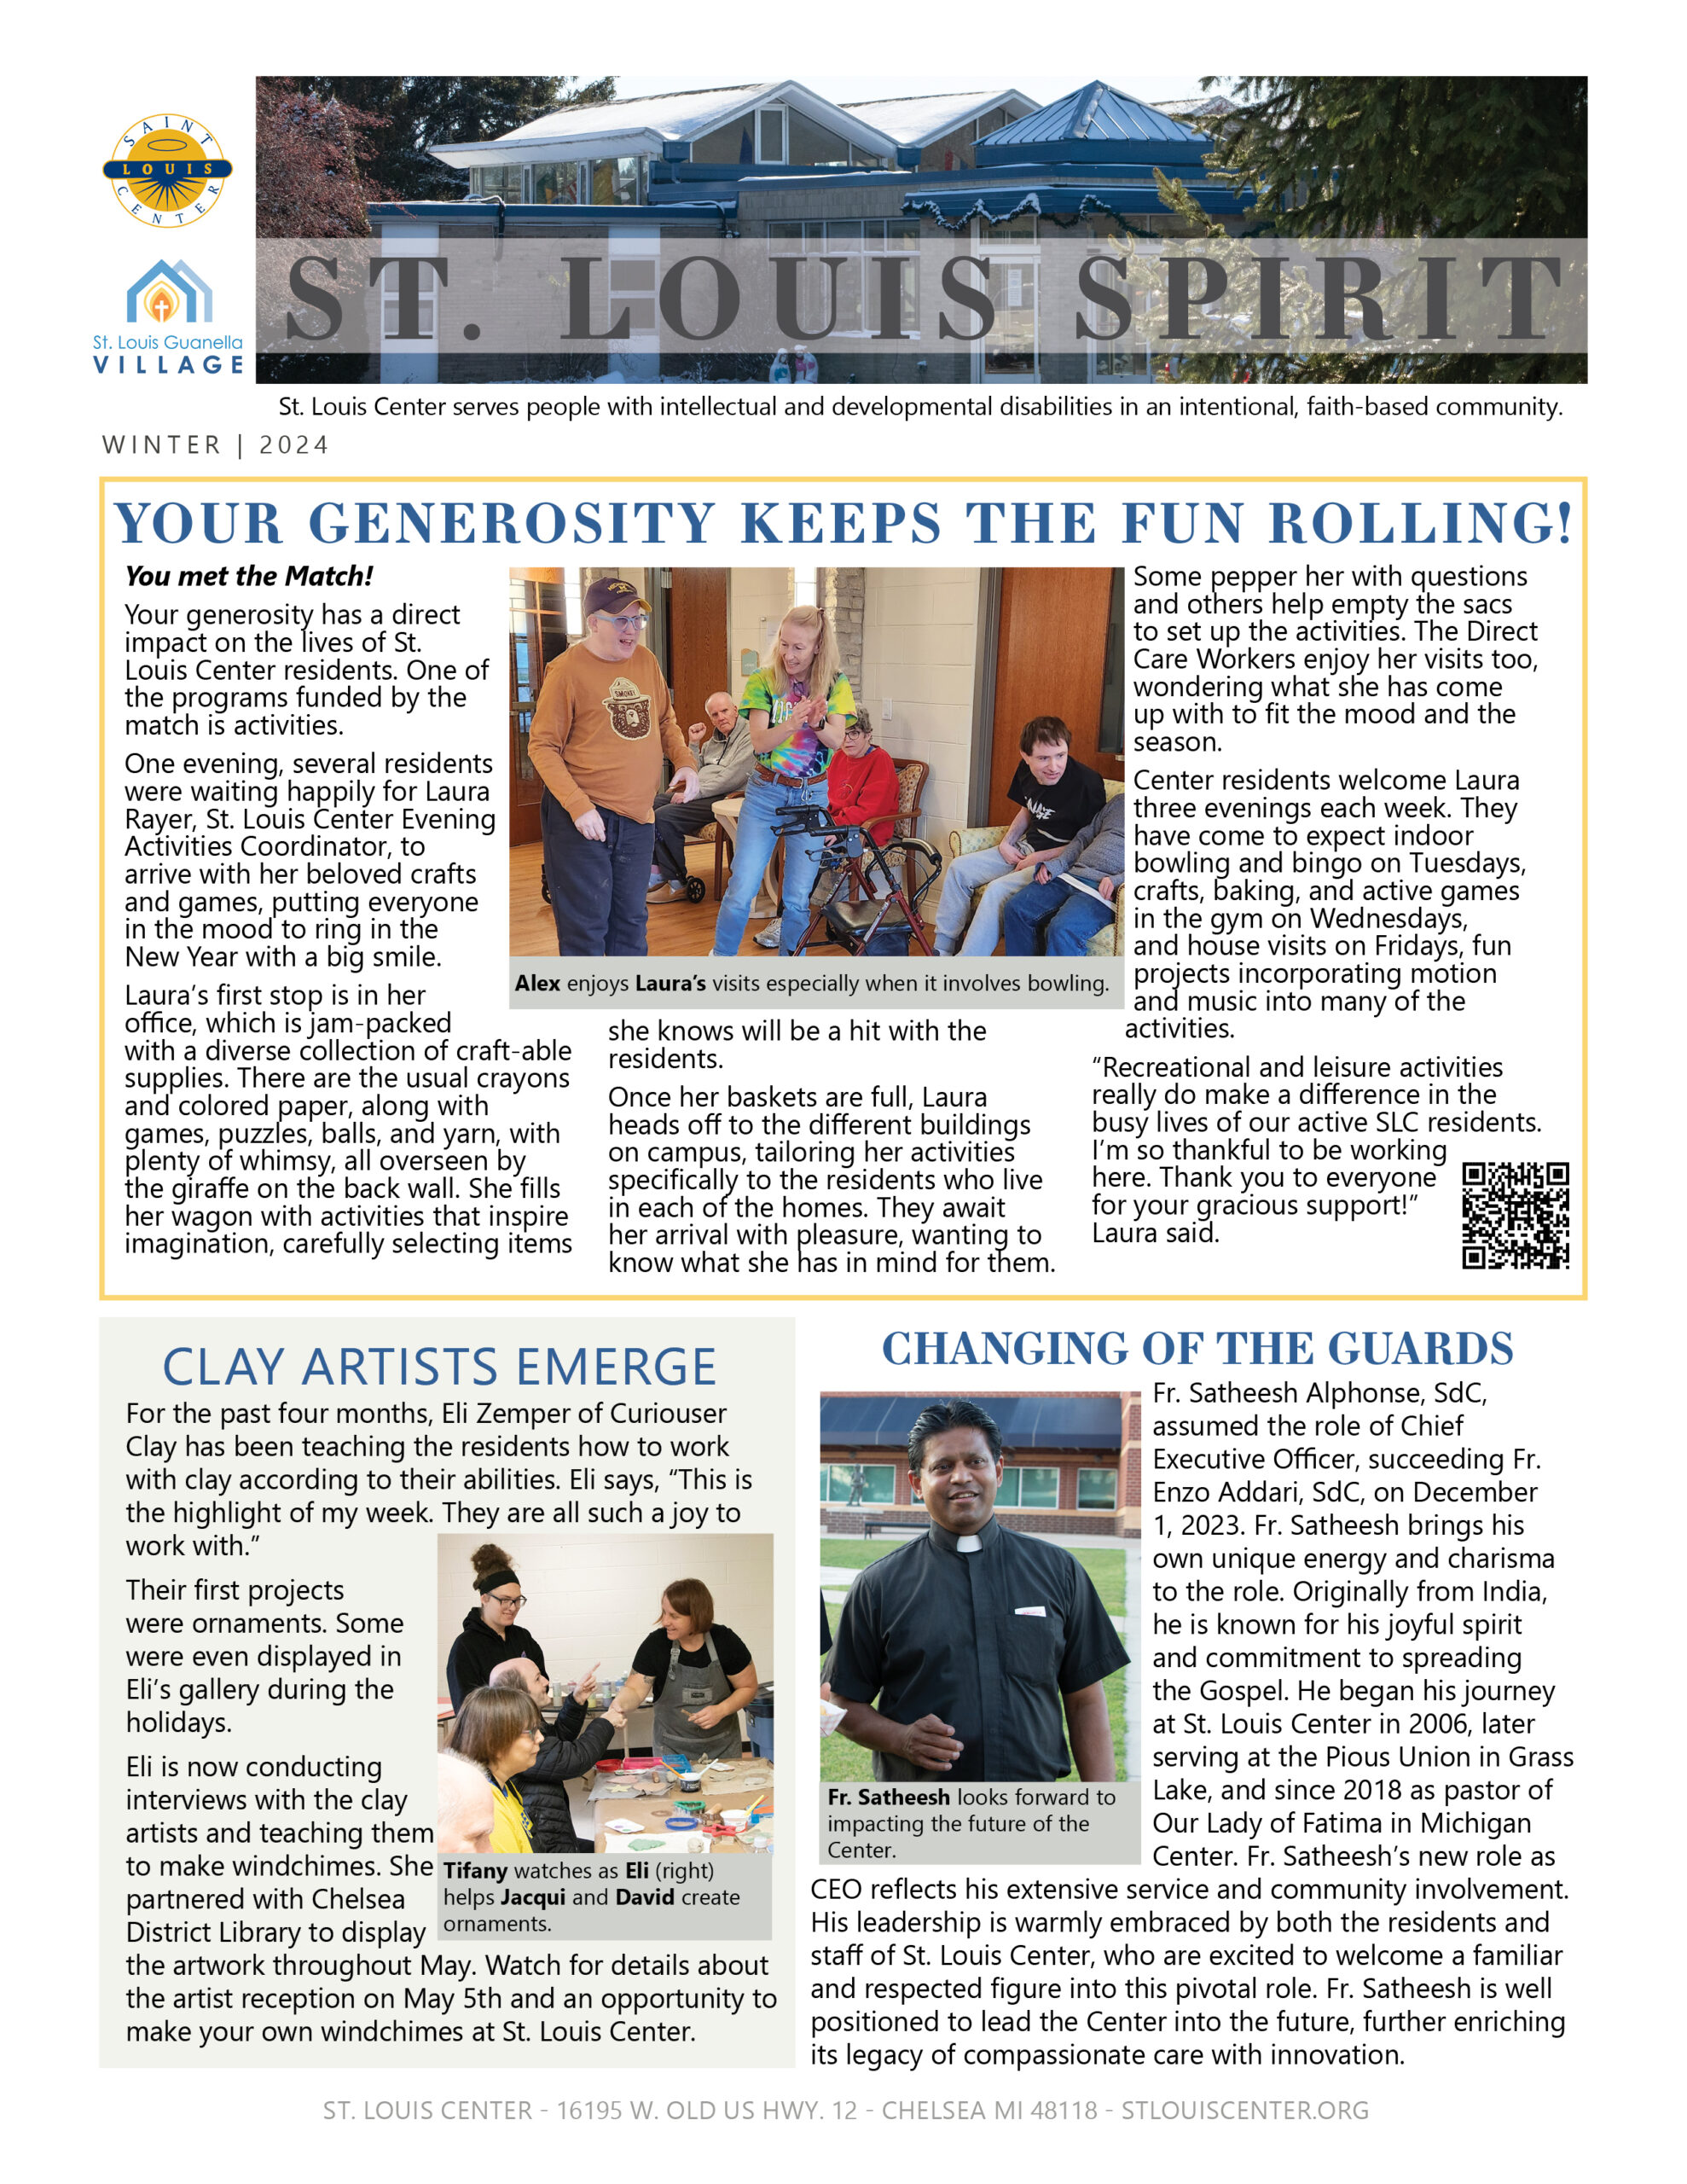 St. Louis Spirit Newsletter - Winter 2024 page 1